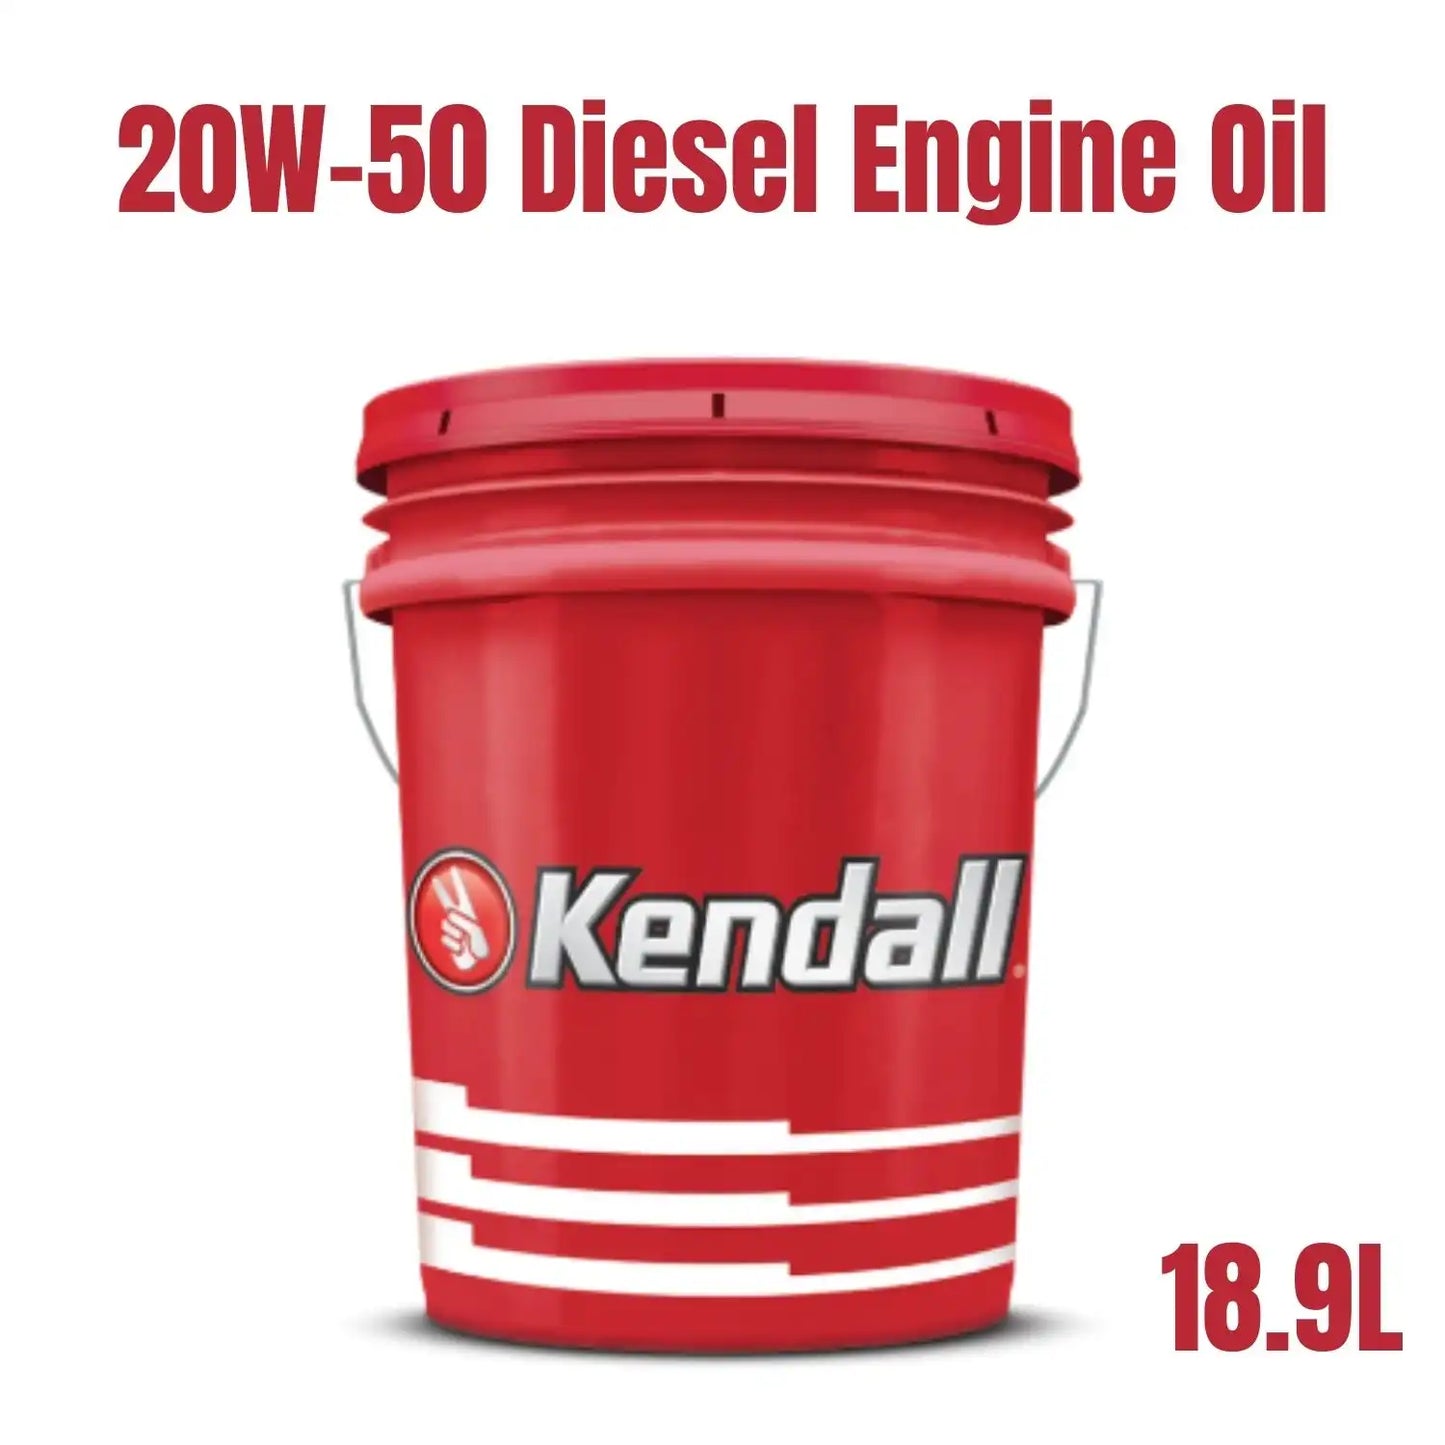 Kendall Super-D 3 Diesel Engine Oil 20W-50 (18.9 Liter)